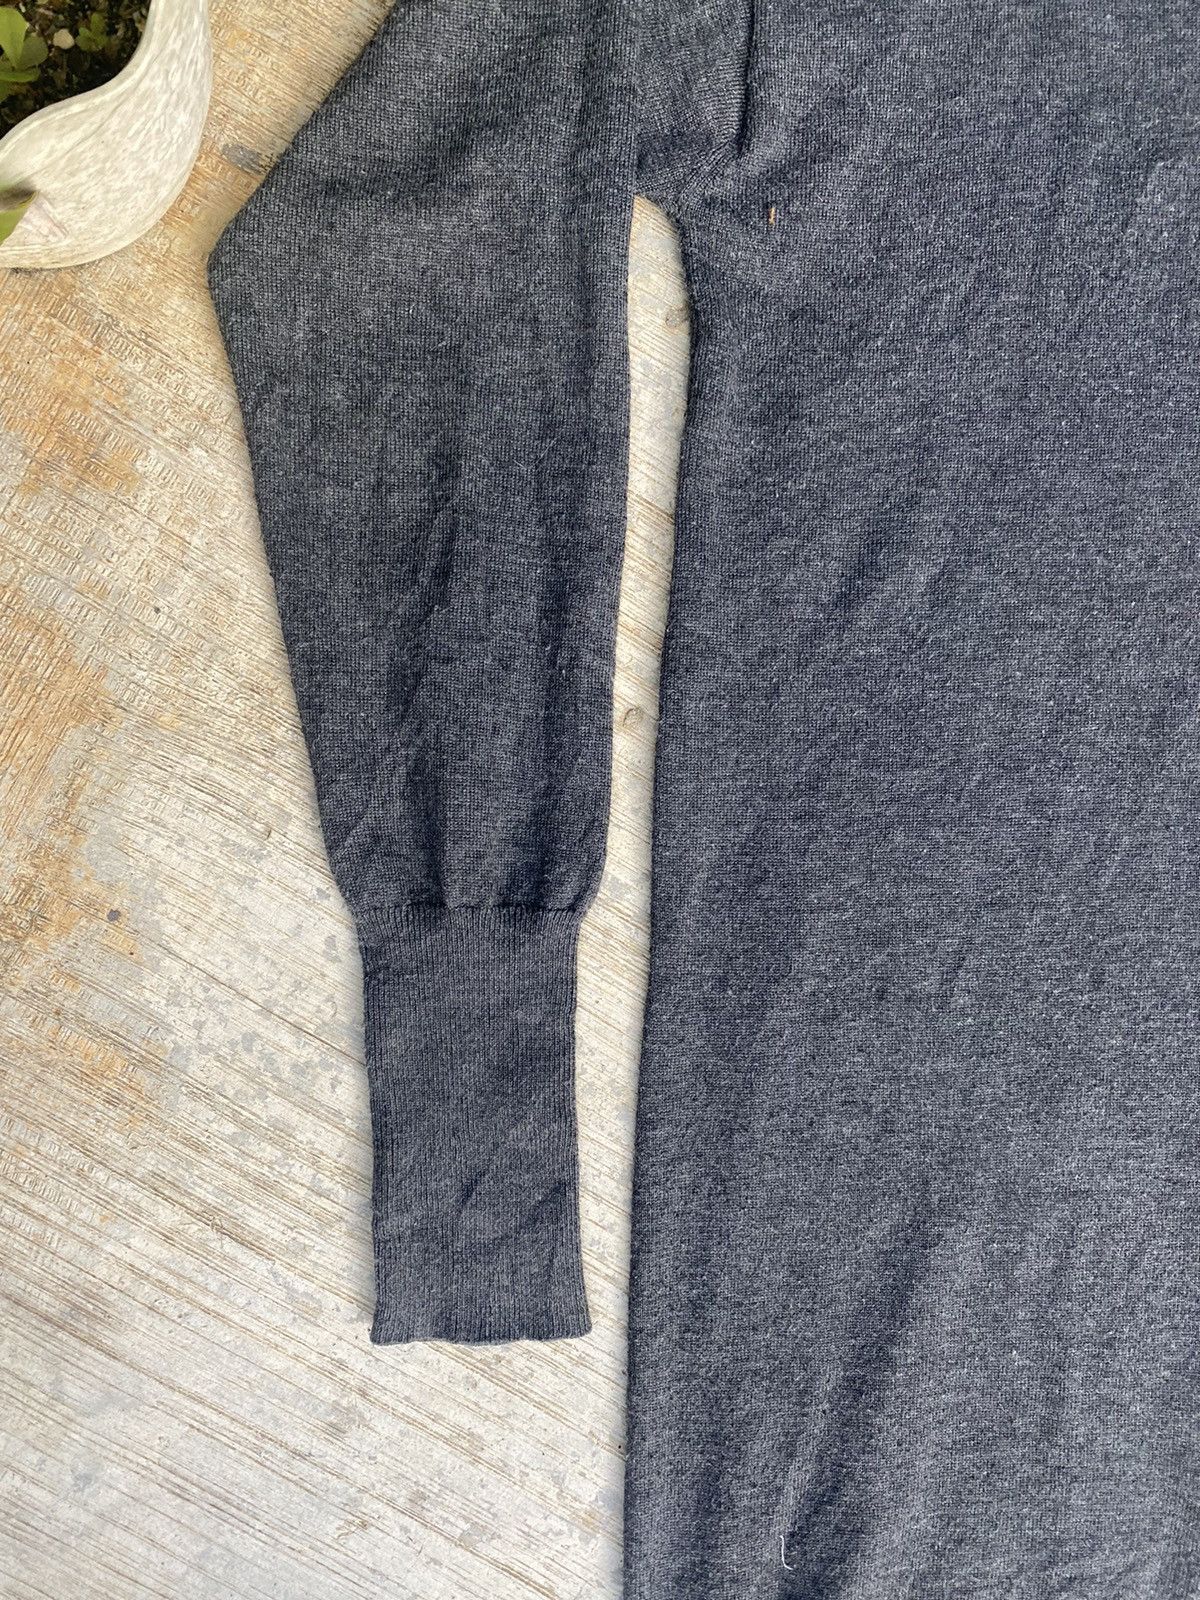 Vintage ⚡️Final drop⚡️ Adam et Rope turtleneck sweater long dresses Size S / US 4 / IT 40 - 4 Thumbnail